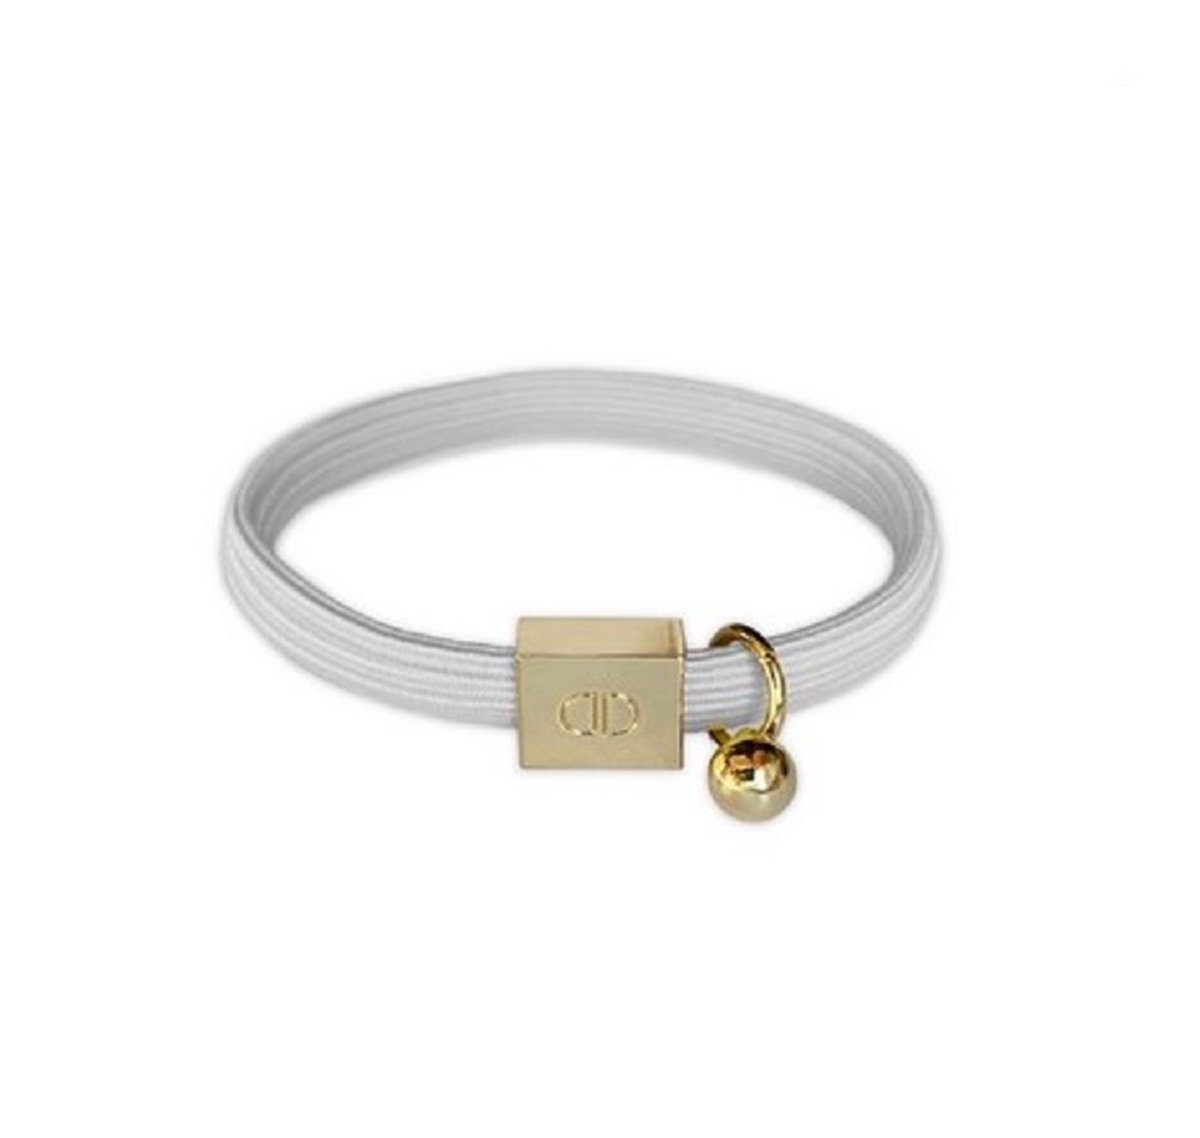 Elastische armband - heel lichtgrijs - gouden details - niet opgerekt 5,5 cm doorsnede - dikte 0,5 cm